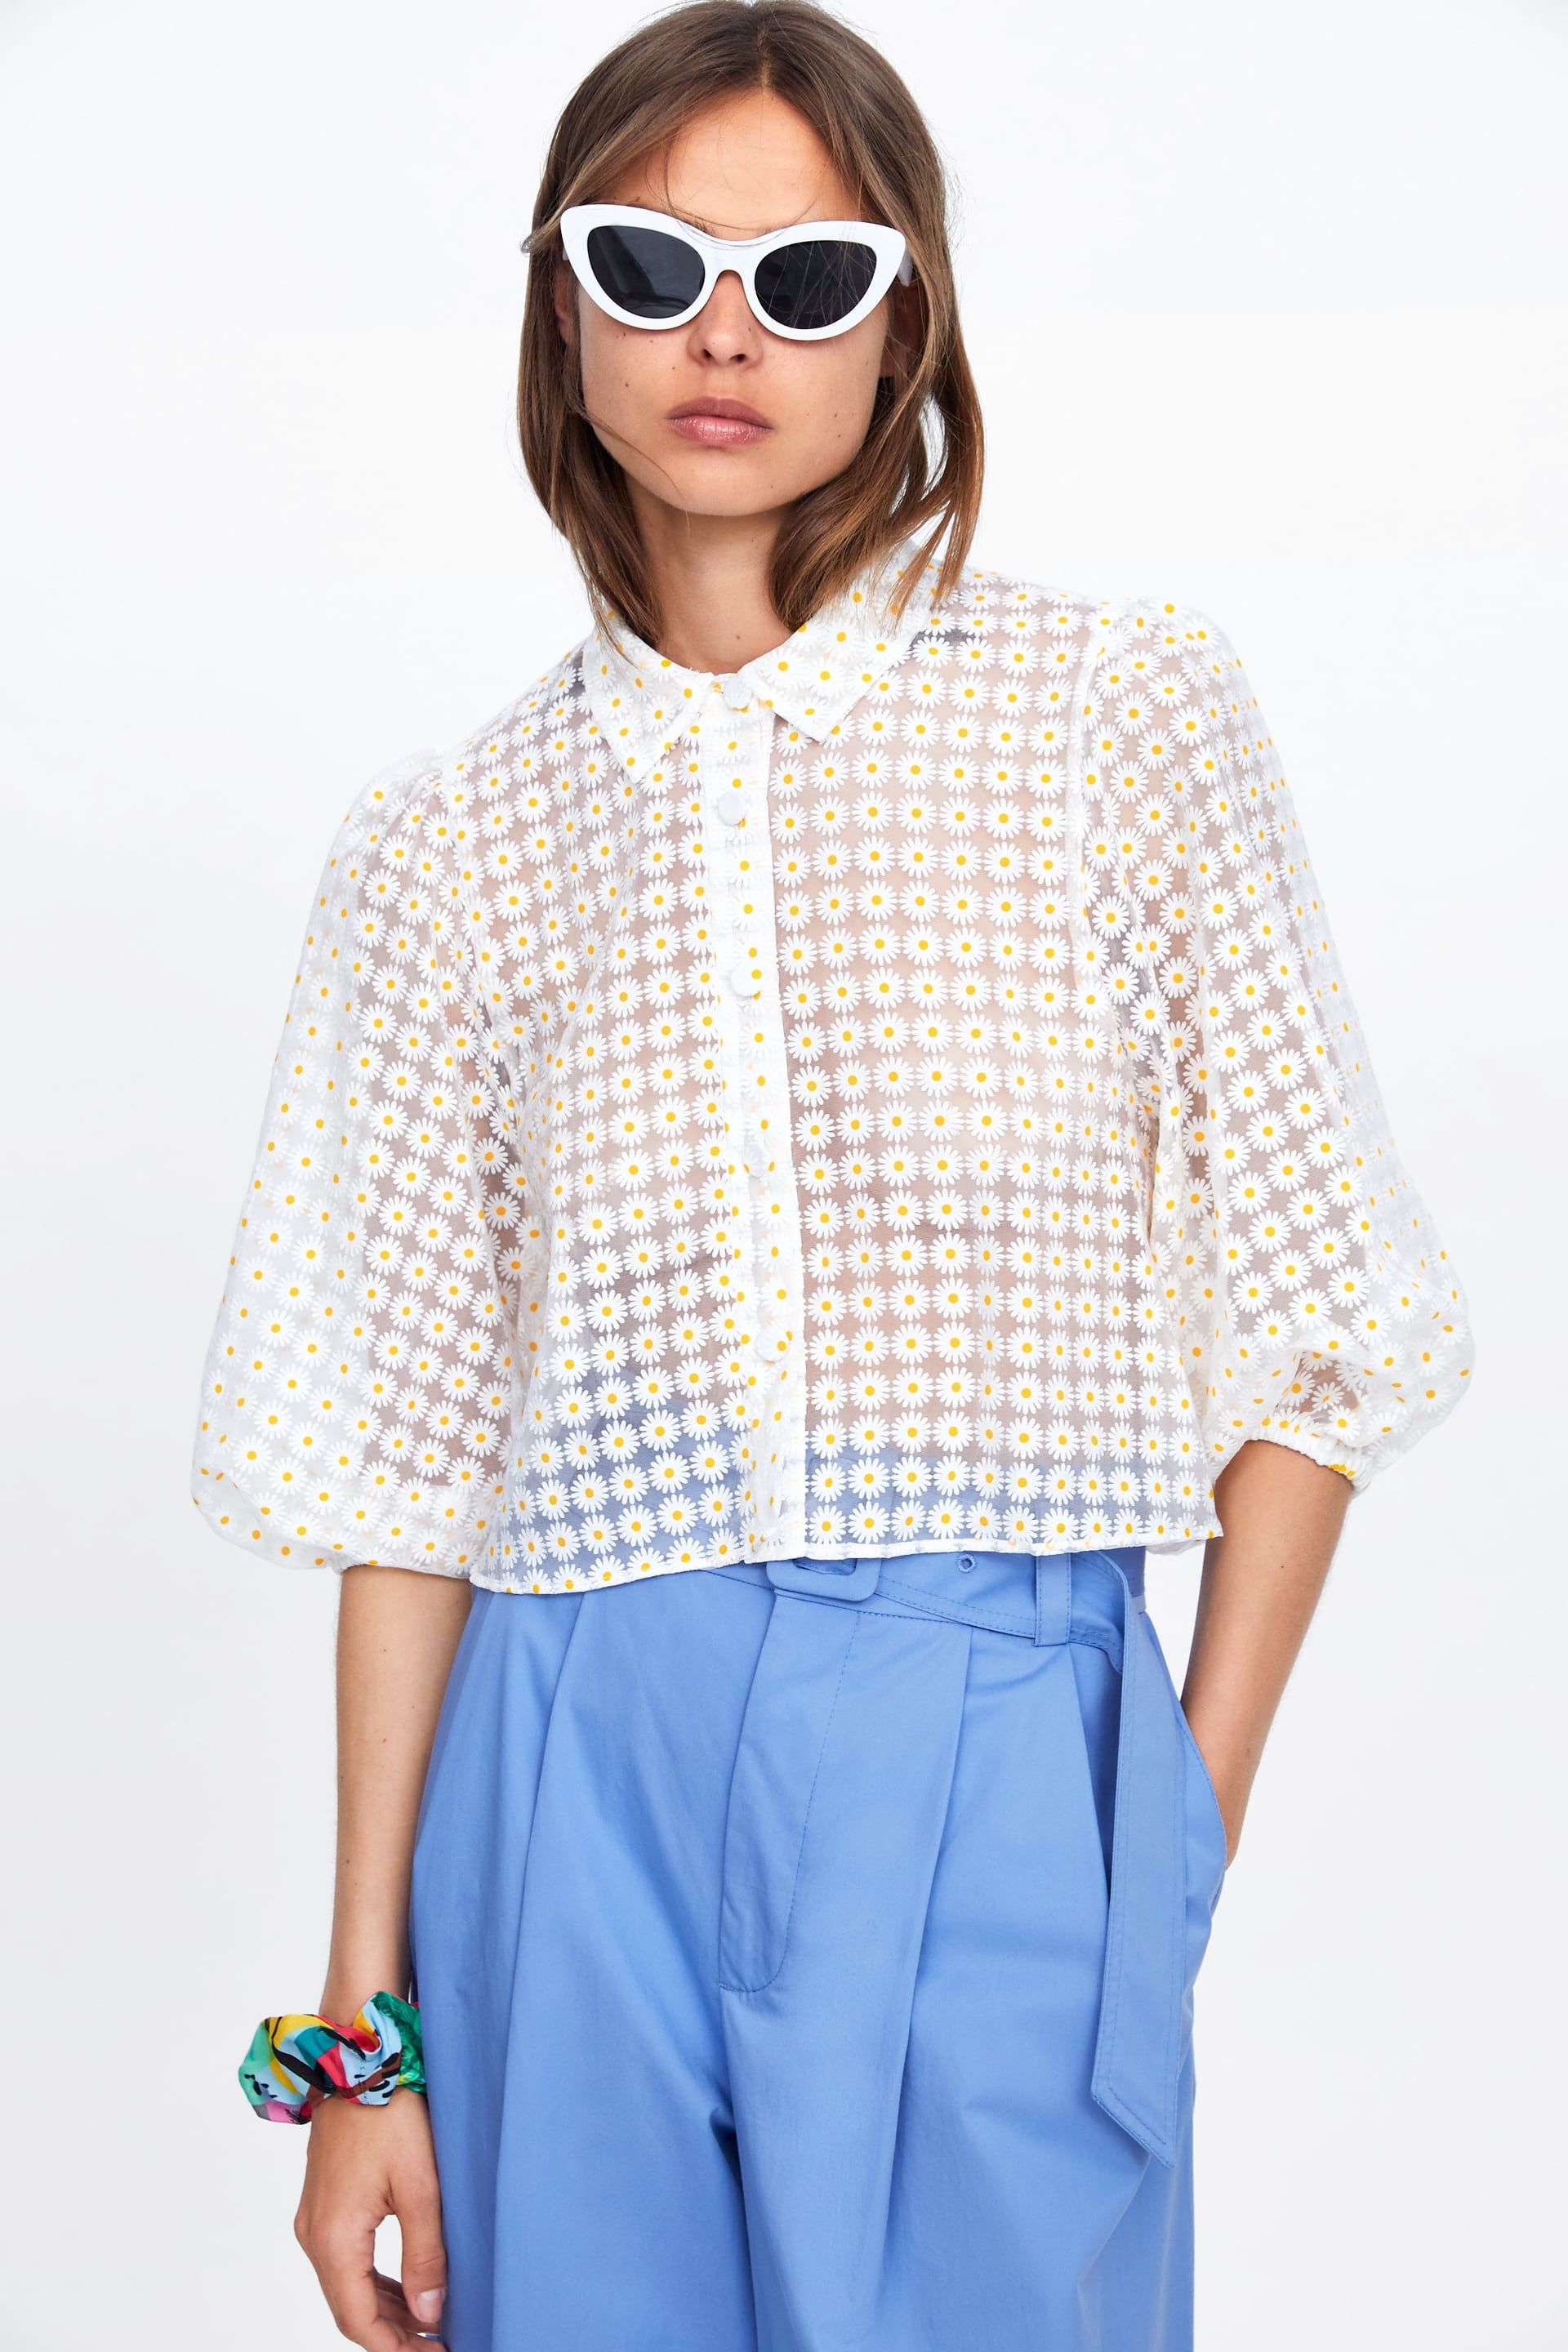 Equipar Pensativo Pobreza extrema Esta blusa de Zara es la primavera hecha prenda (y nos encanta)